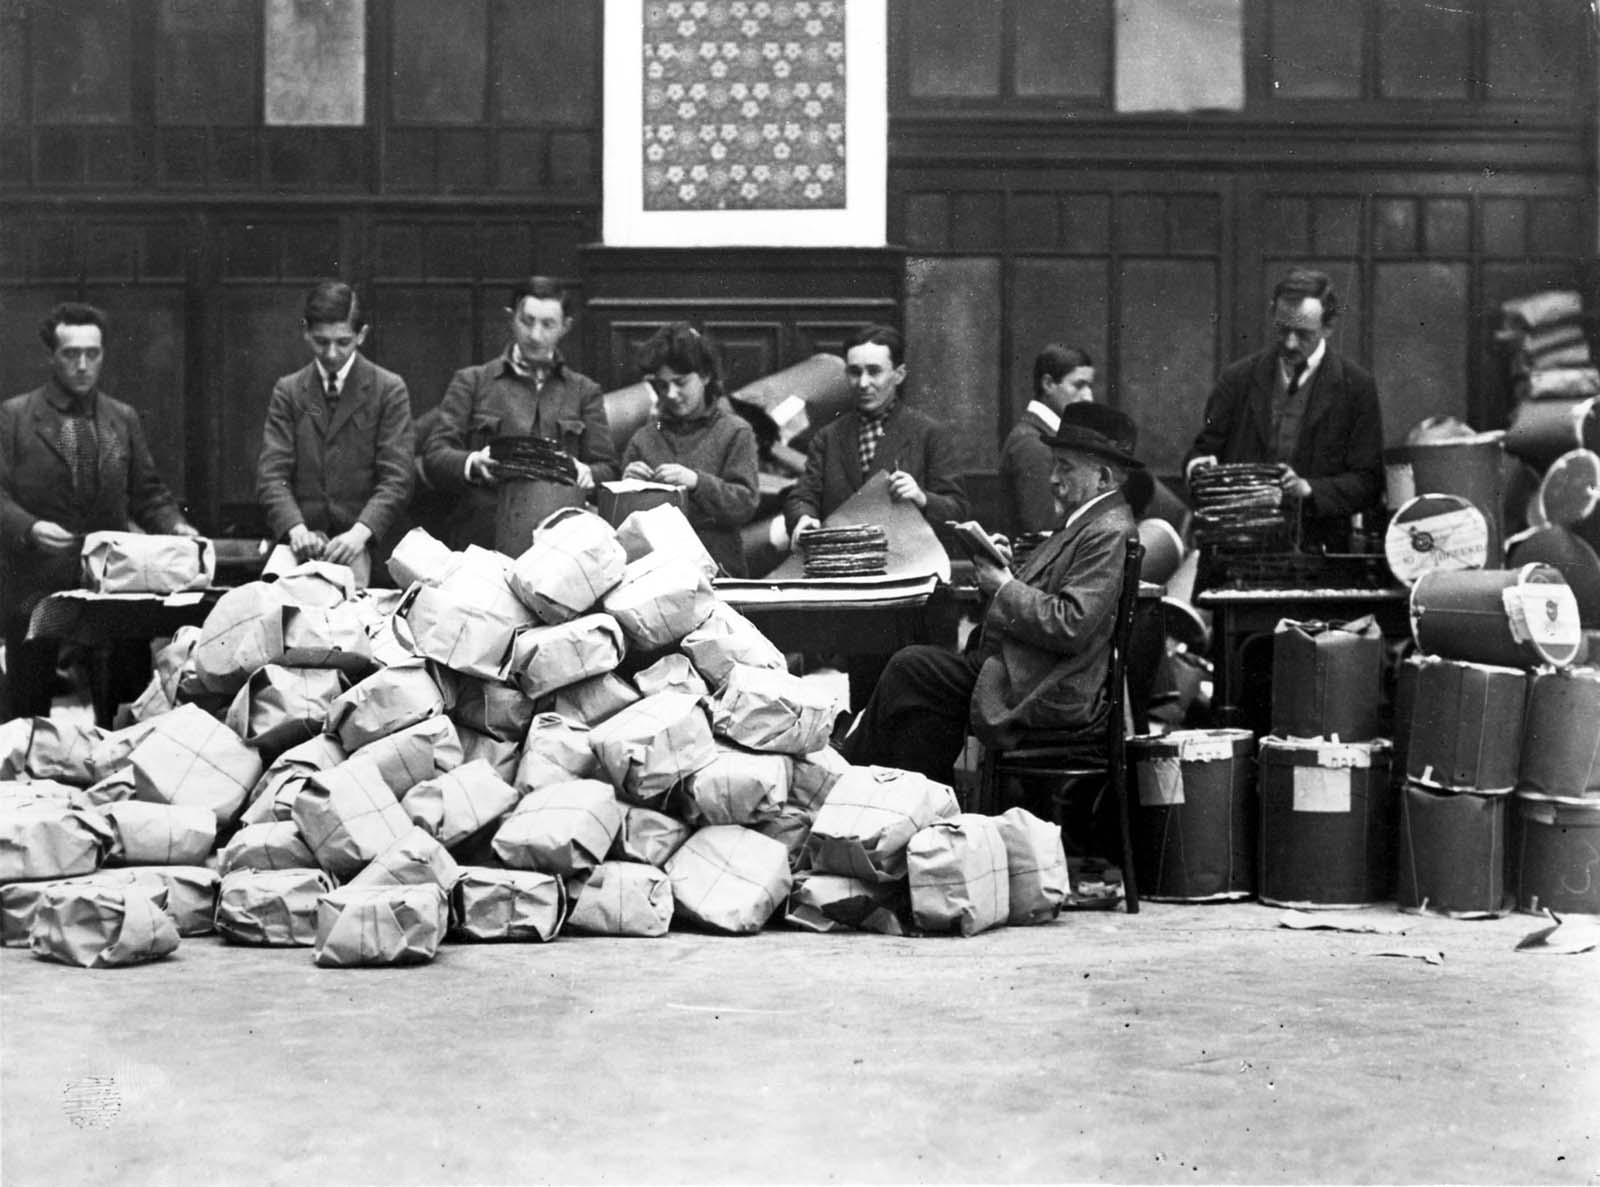 וינה, אוסטריה,1921 - הכנת מצות לחלוקה לנזקקים